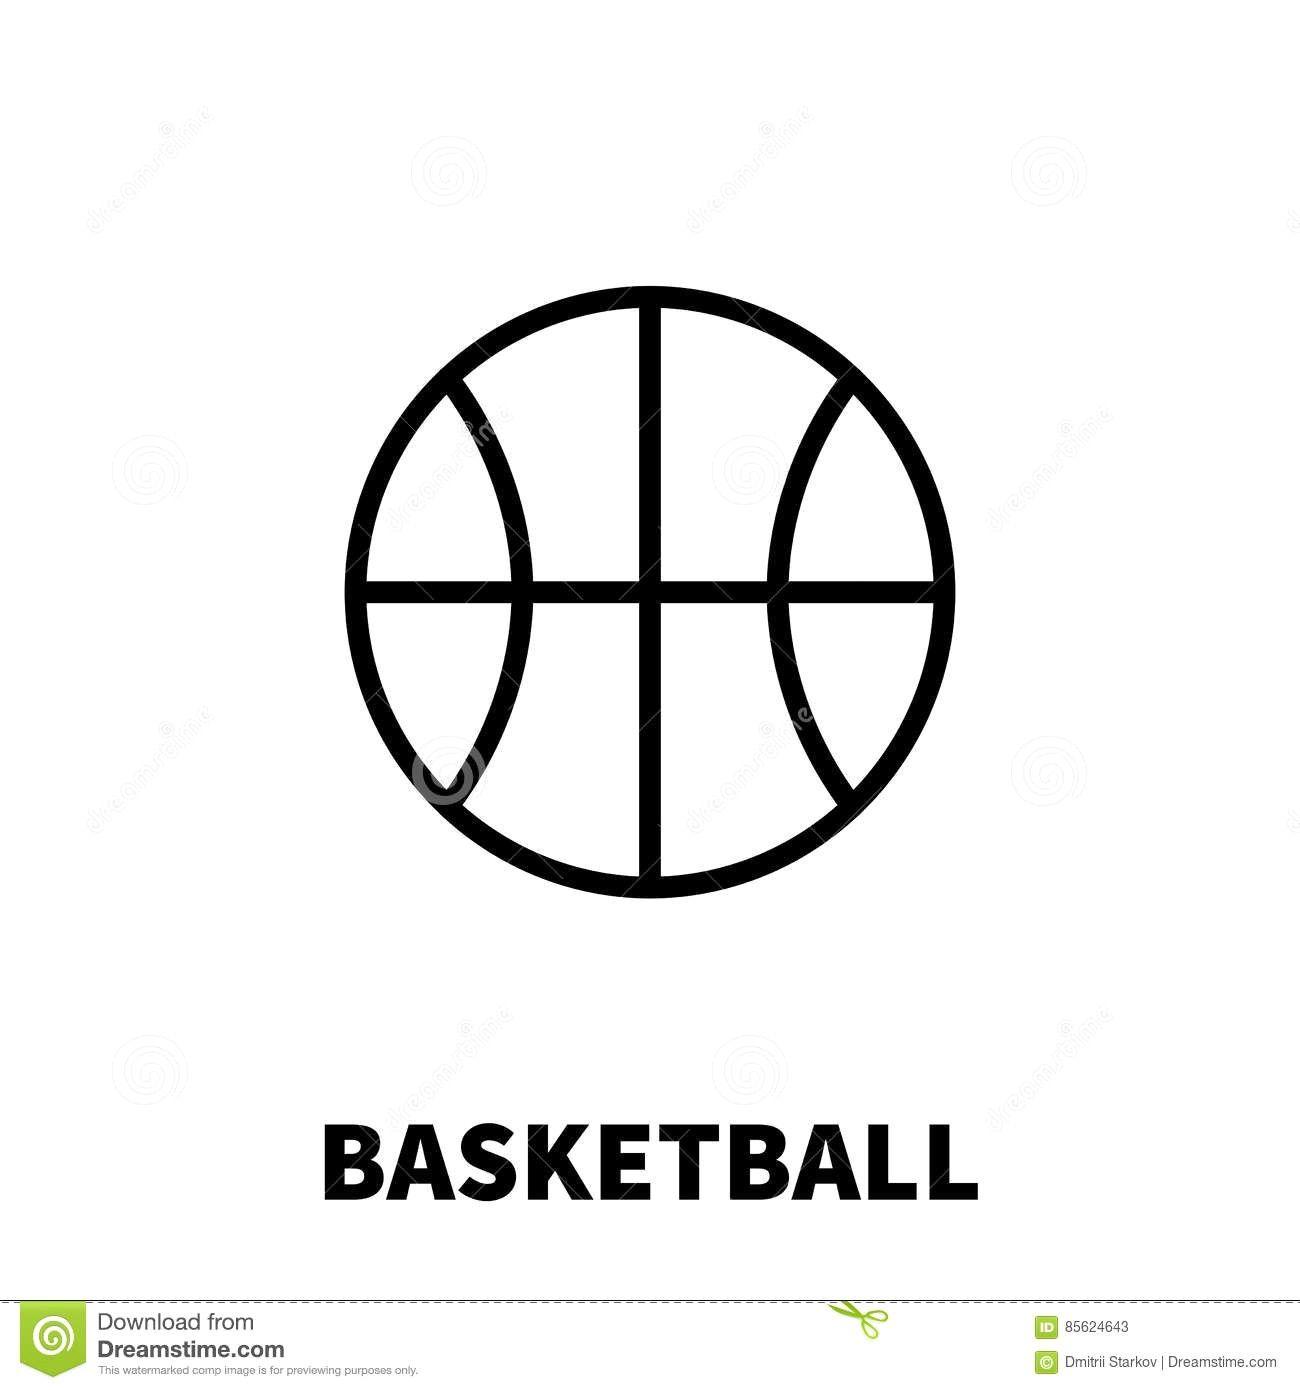 Modern Basketball Logo - Stock Vector Basketball Outline On White Background 275698250 Lines